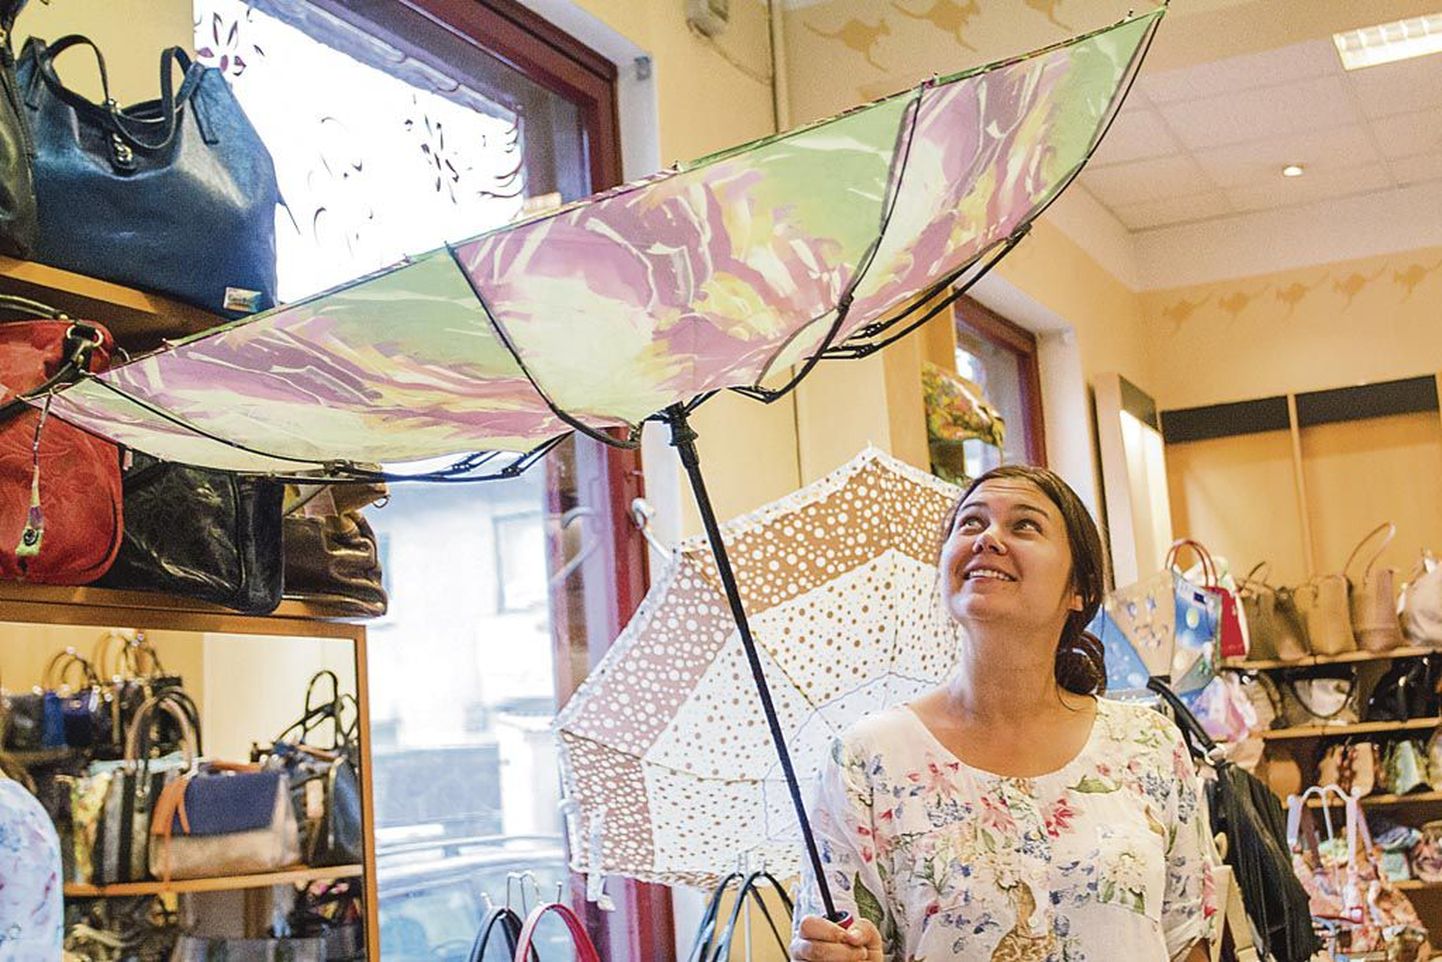 Klienditeenindaja Kerstin Soomets näitab uutmoodi tuulekindlat vihmavarju, mille plastosa kaardub, ilma et puruneks.